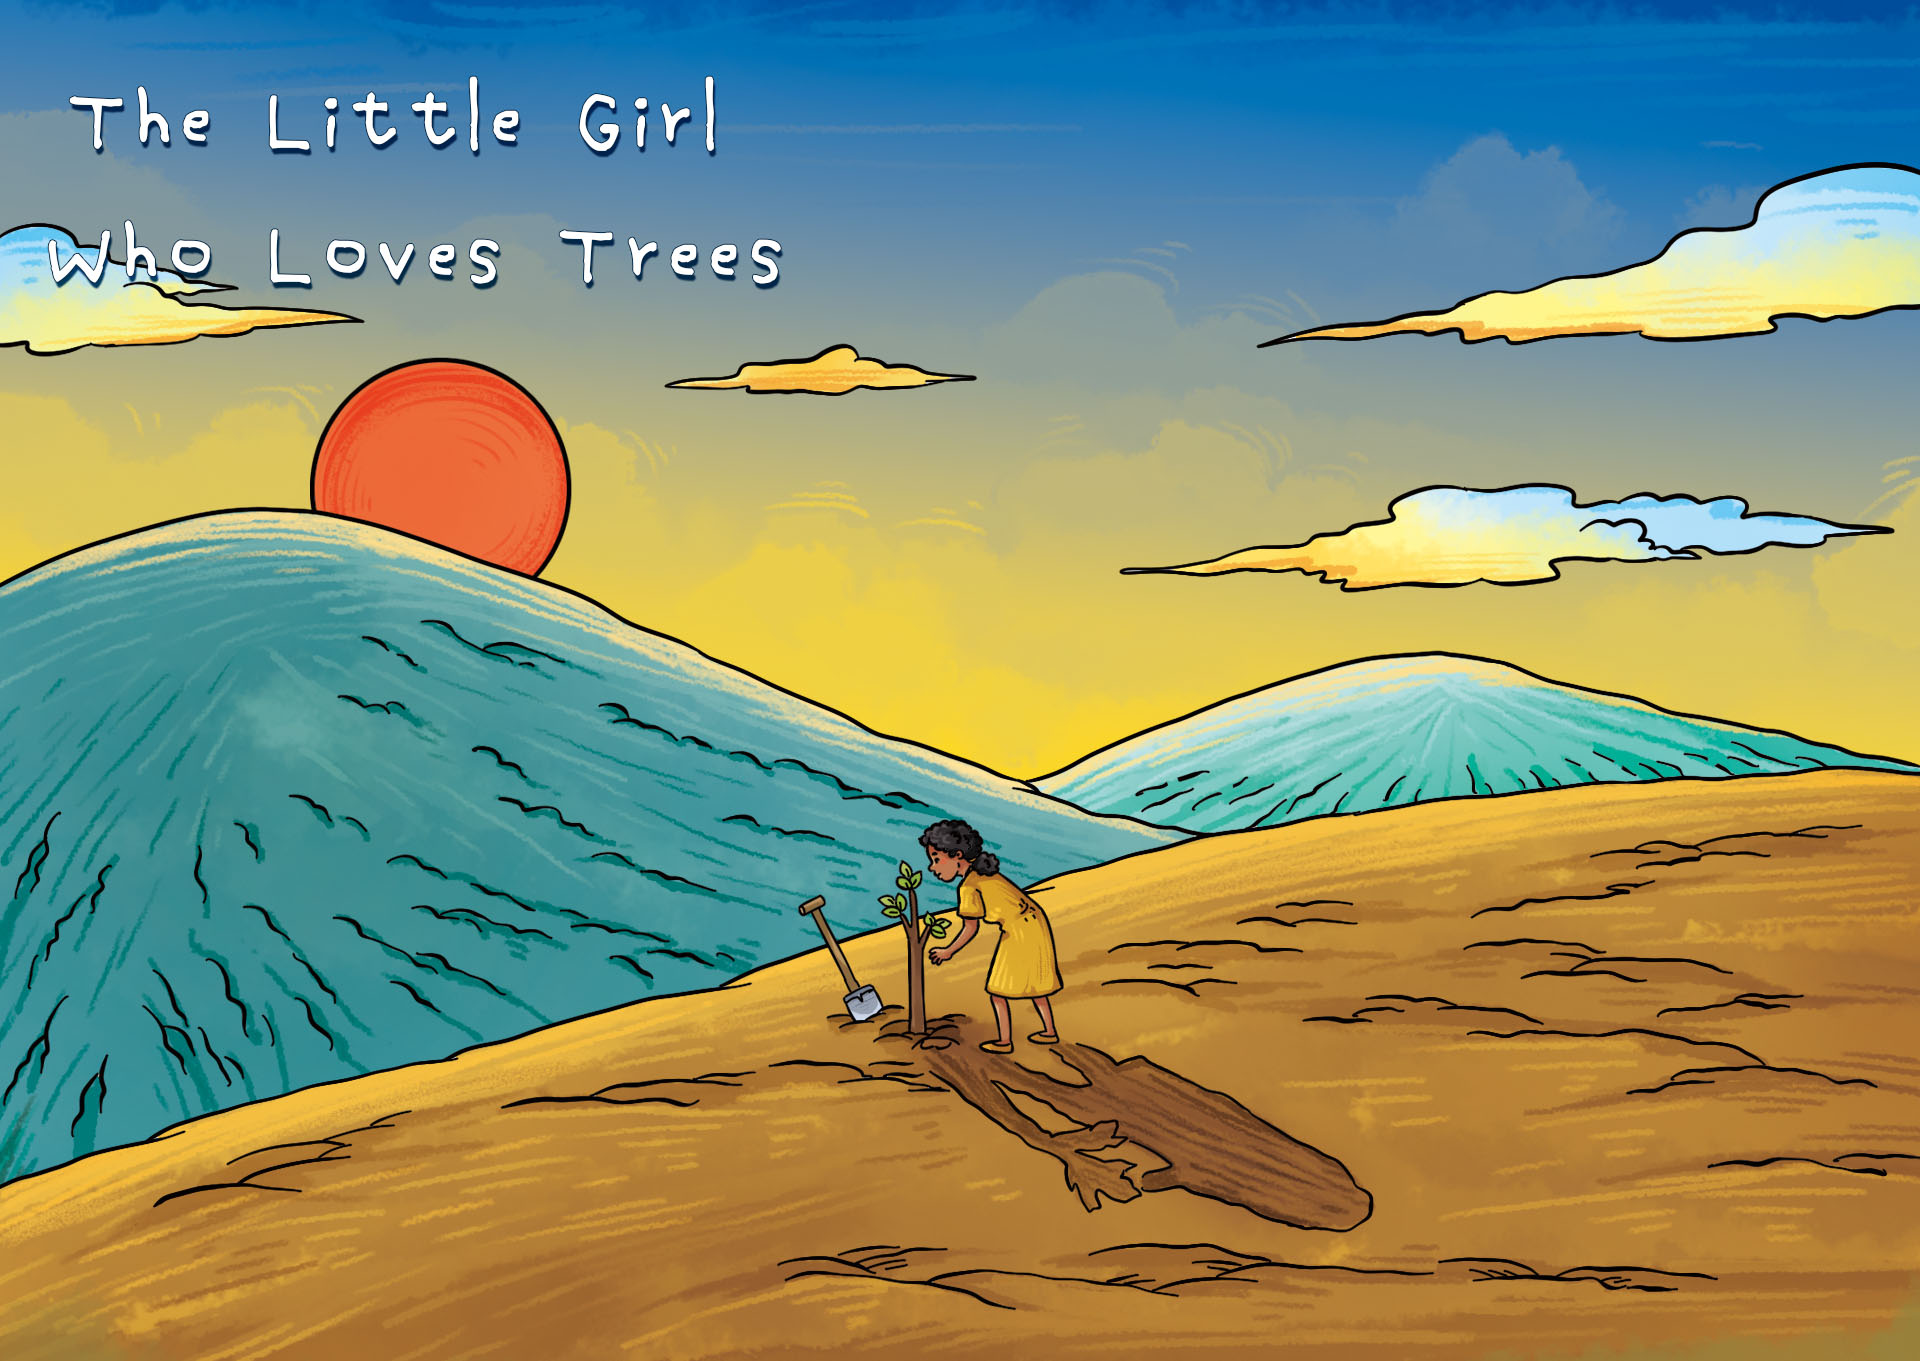 The Little Girl Who Loves Trees